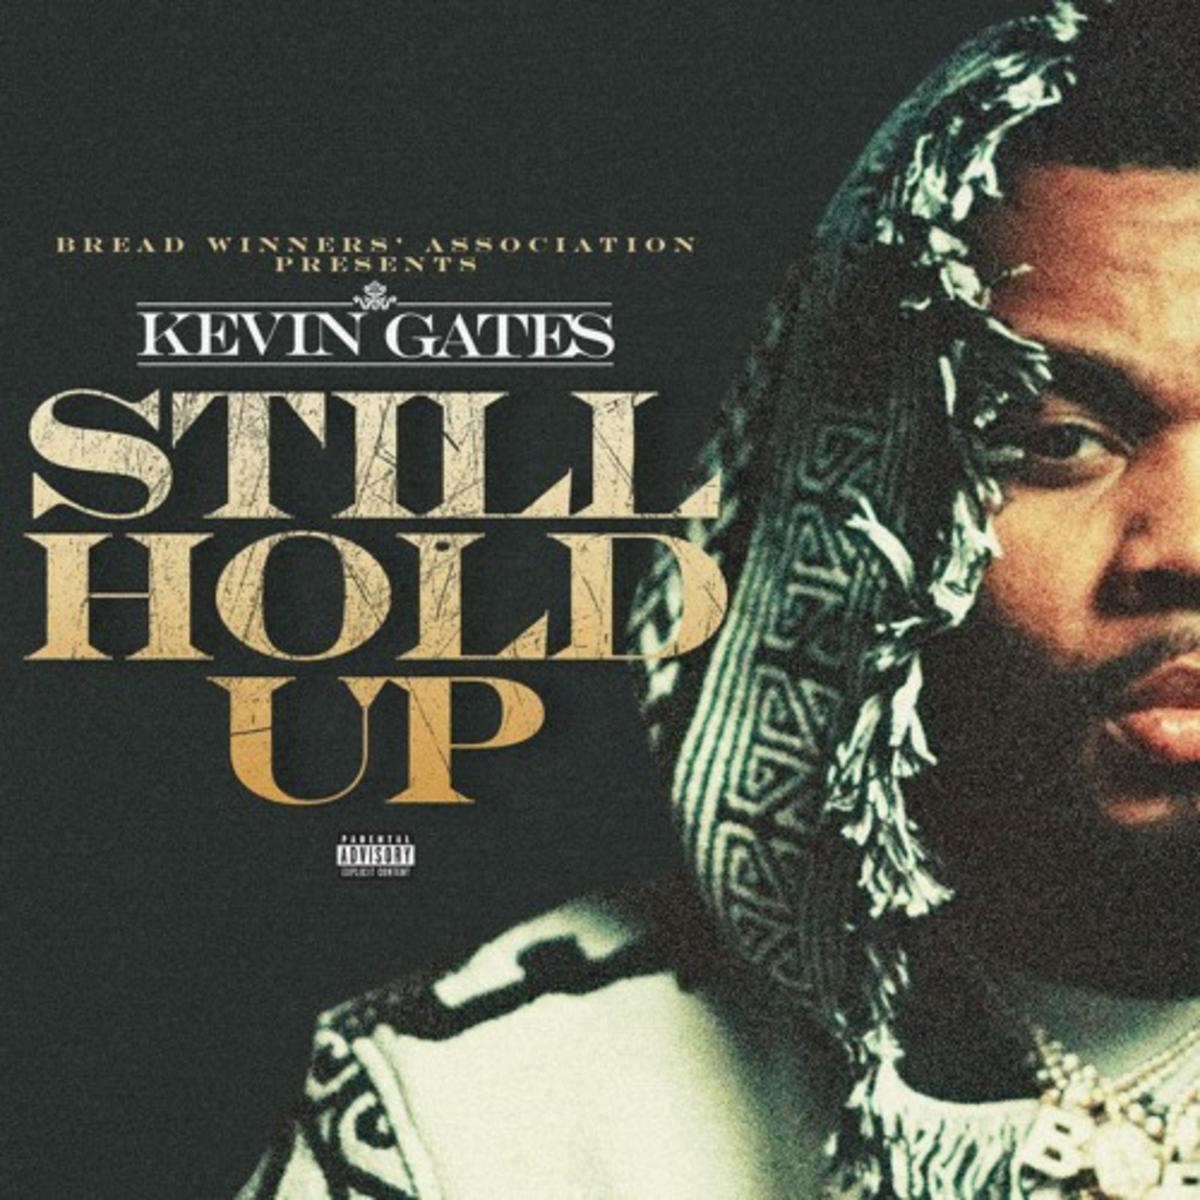 Kevin Gates – “Still Hold Up” [Audio]